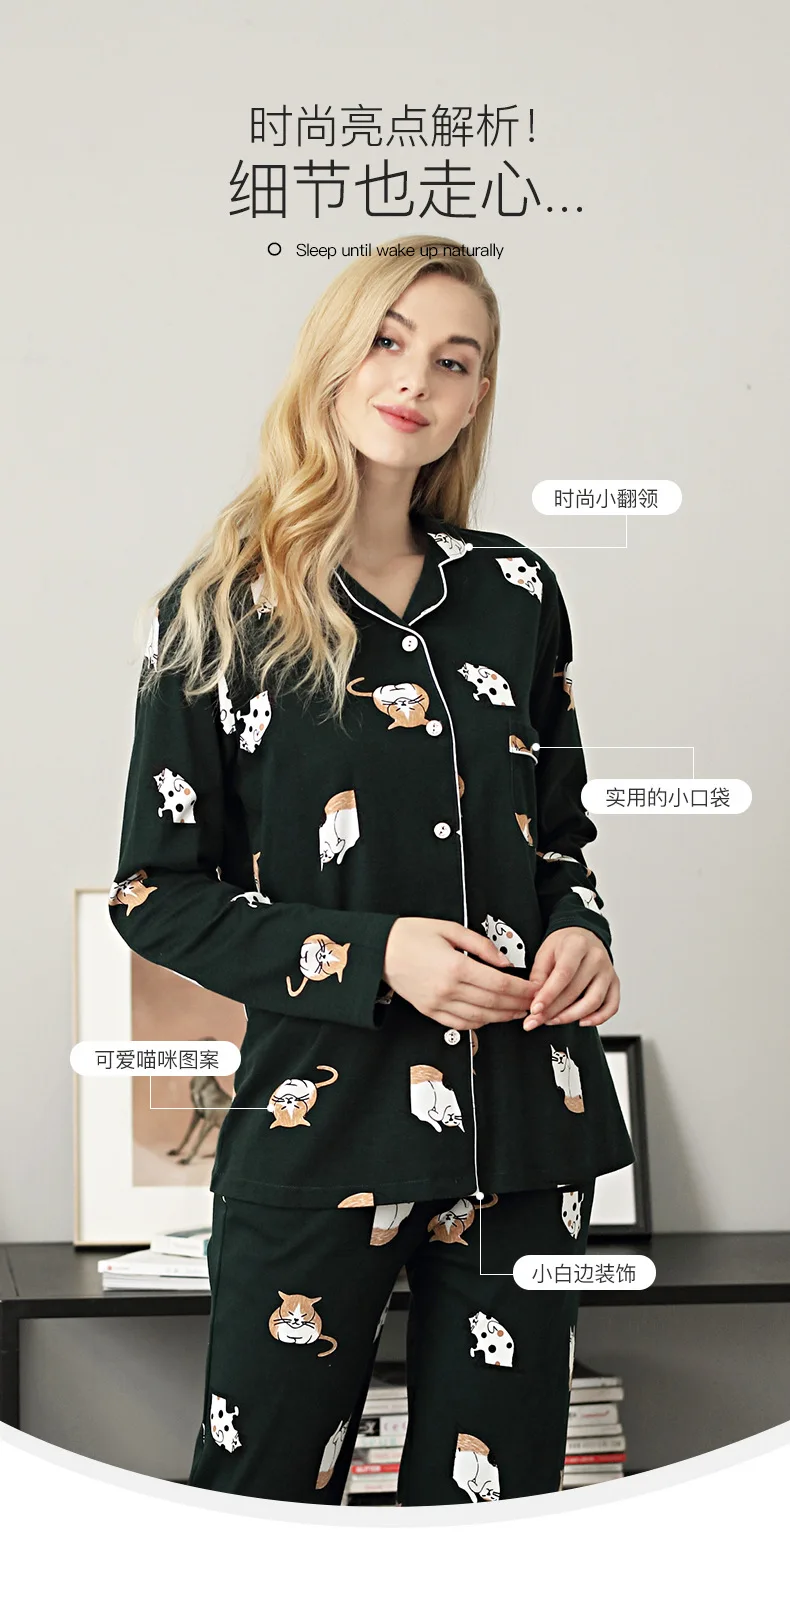 Пижама с принтом кошки Женская Осень Зима темно зеленый кардиган длинный рукав Корейский мультфильм Повседневная Милая Домашняя одежда костюм для женщин